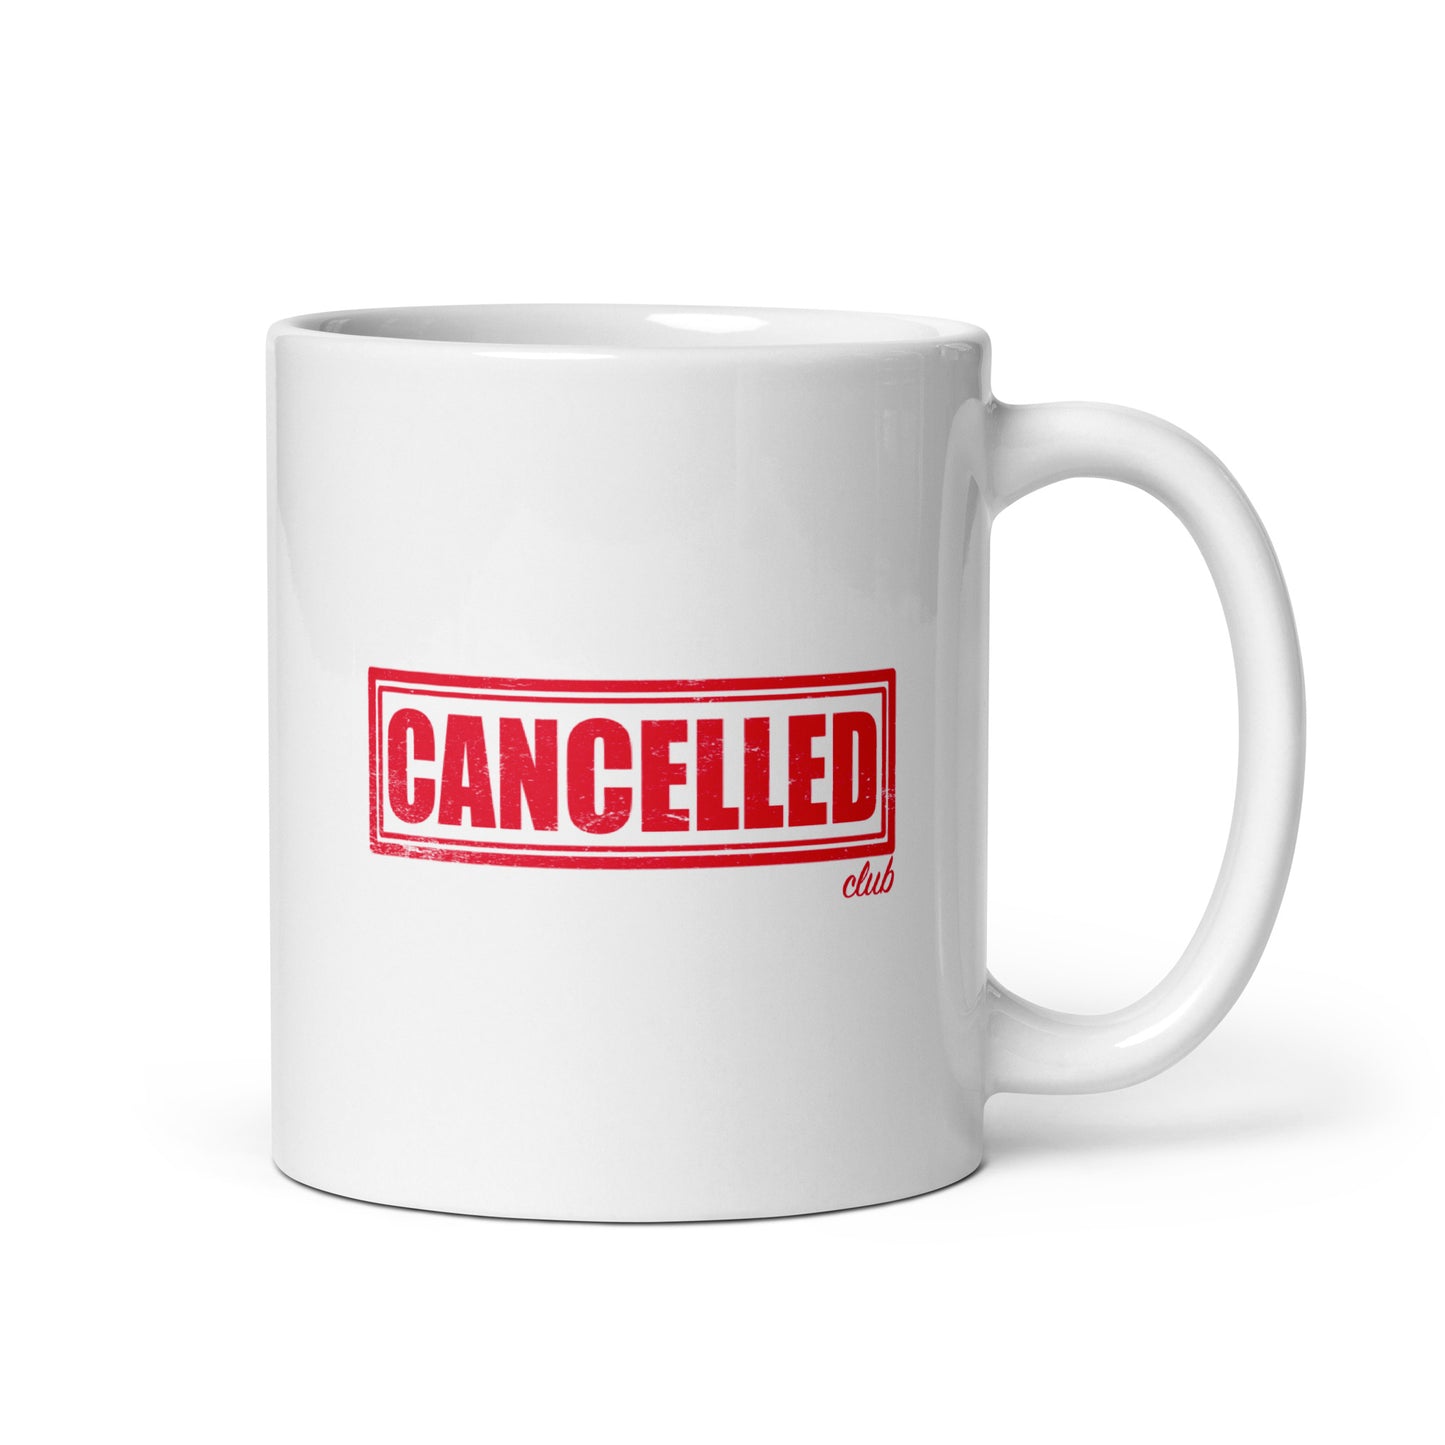 White glossy mug - Emergency Use Authorization - Cancelled Club